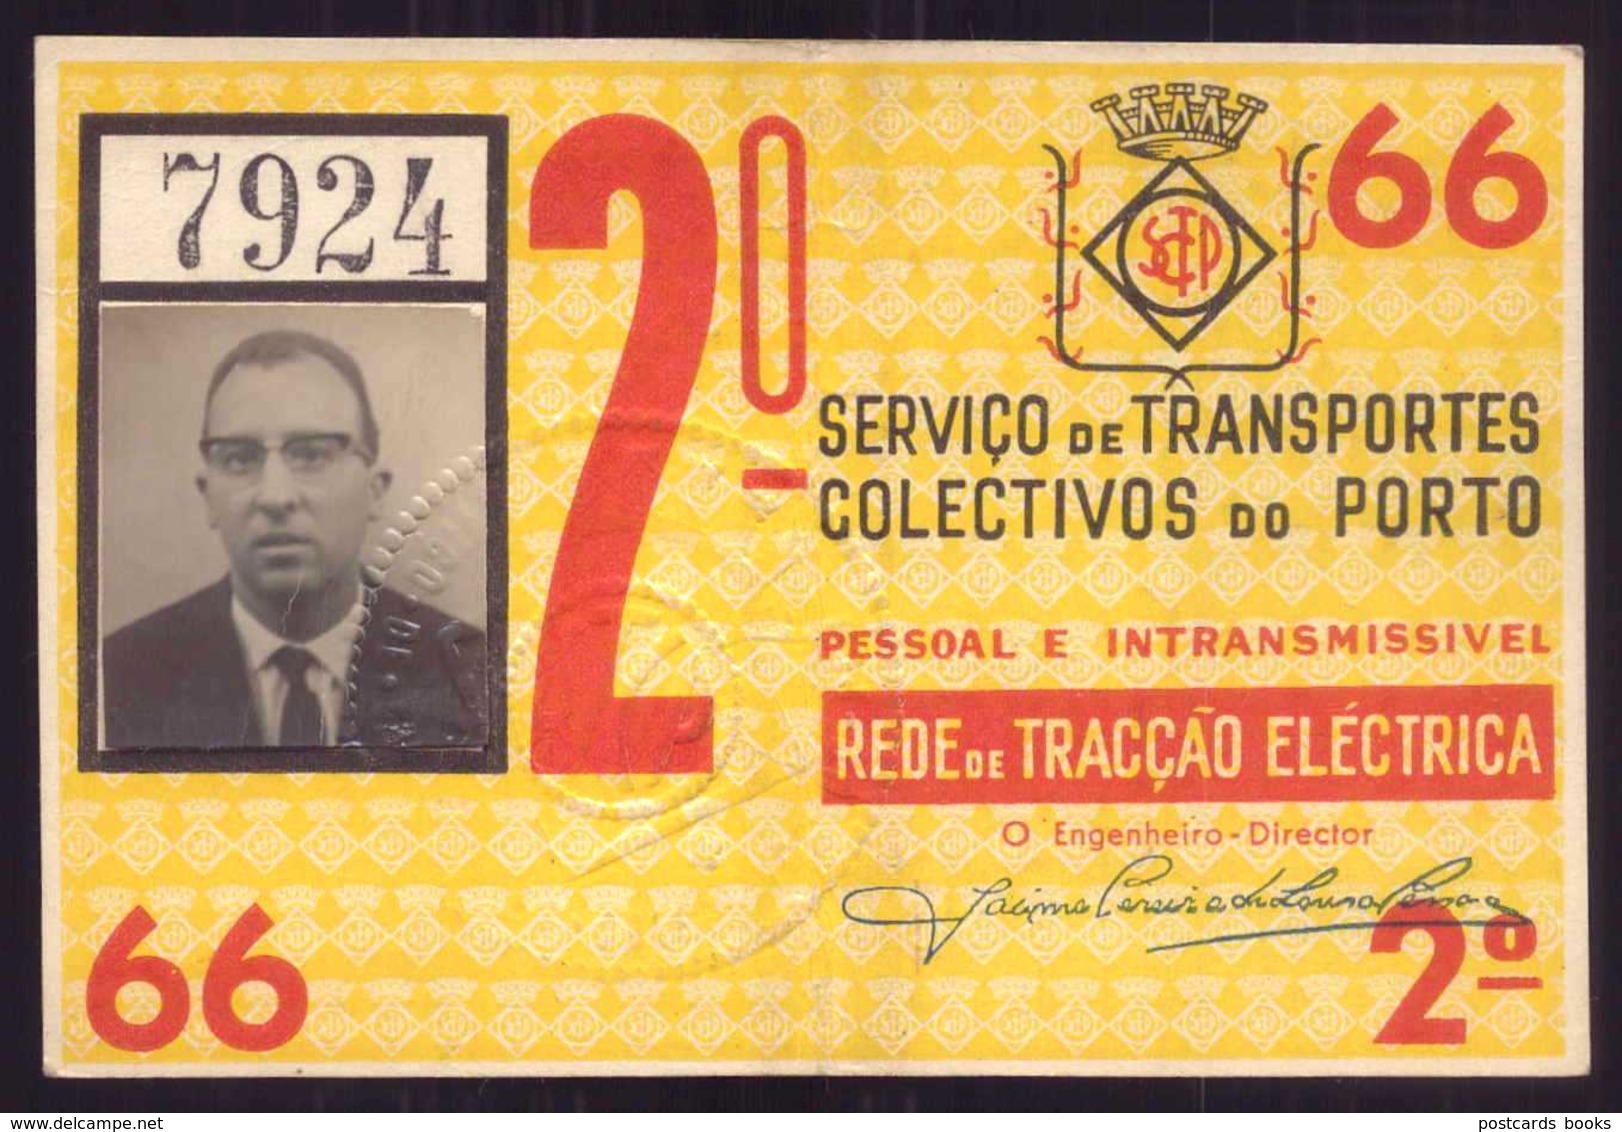 1966 Passe STCP Serviço Transportes Colectivos Do PORTO Rede Tracção Electrica. Pass Ticket TRAM Portugal 1966 - Europe